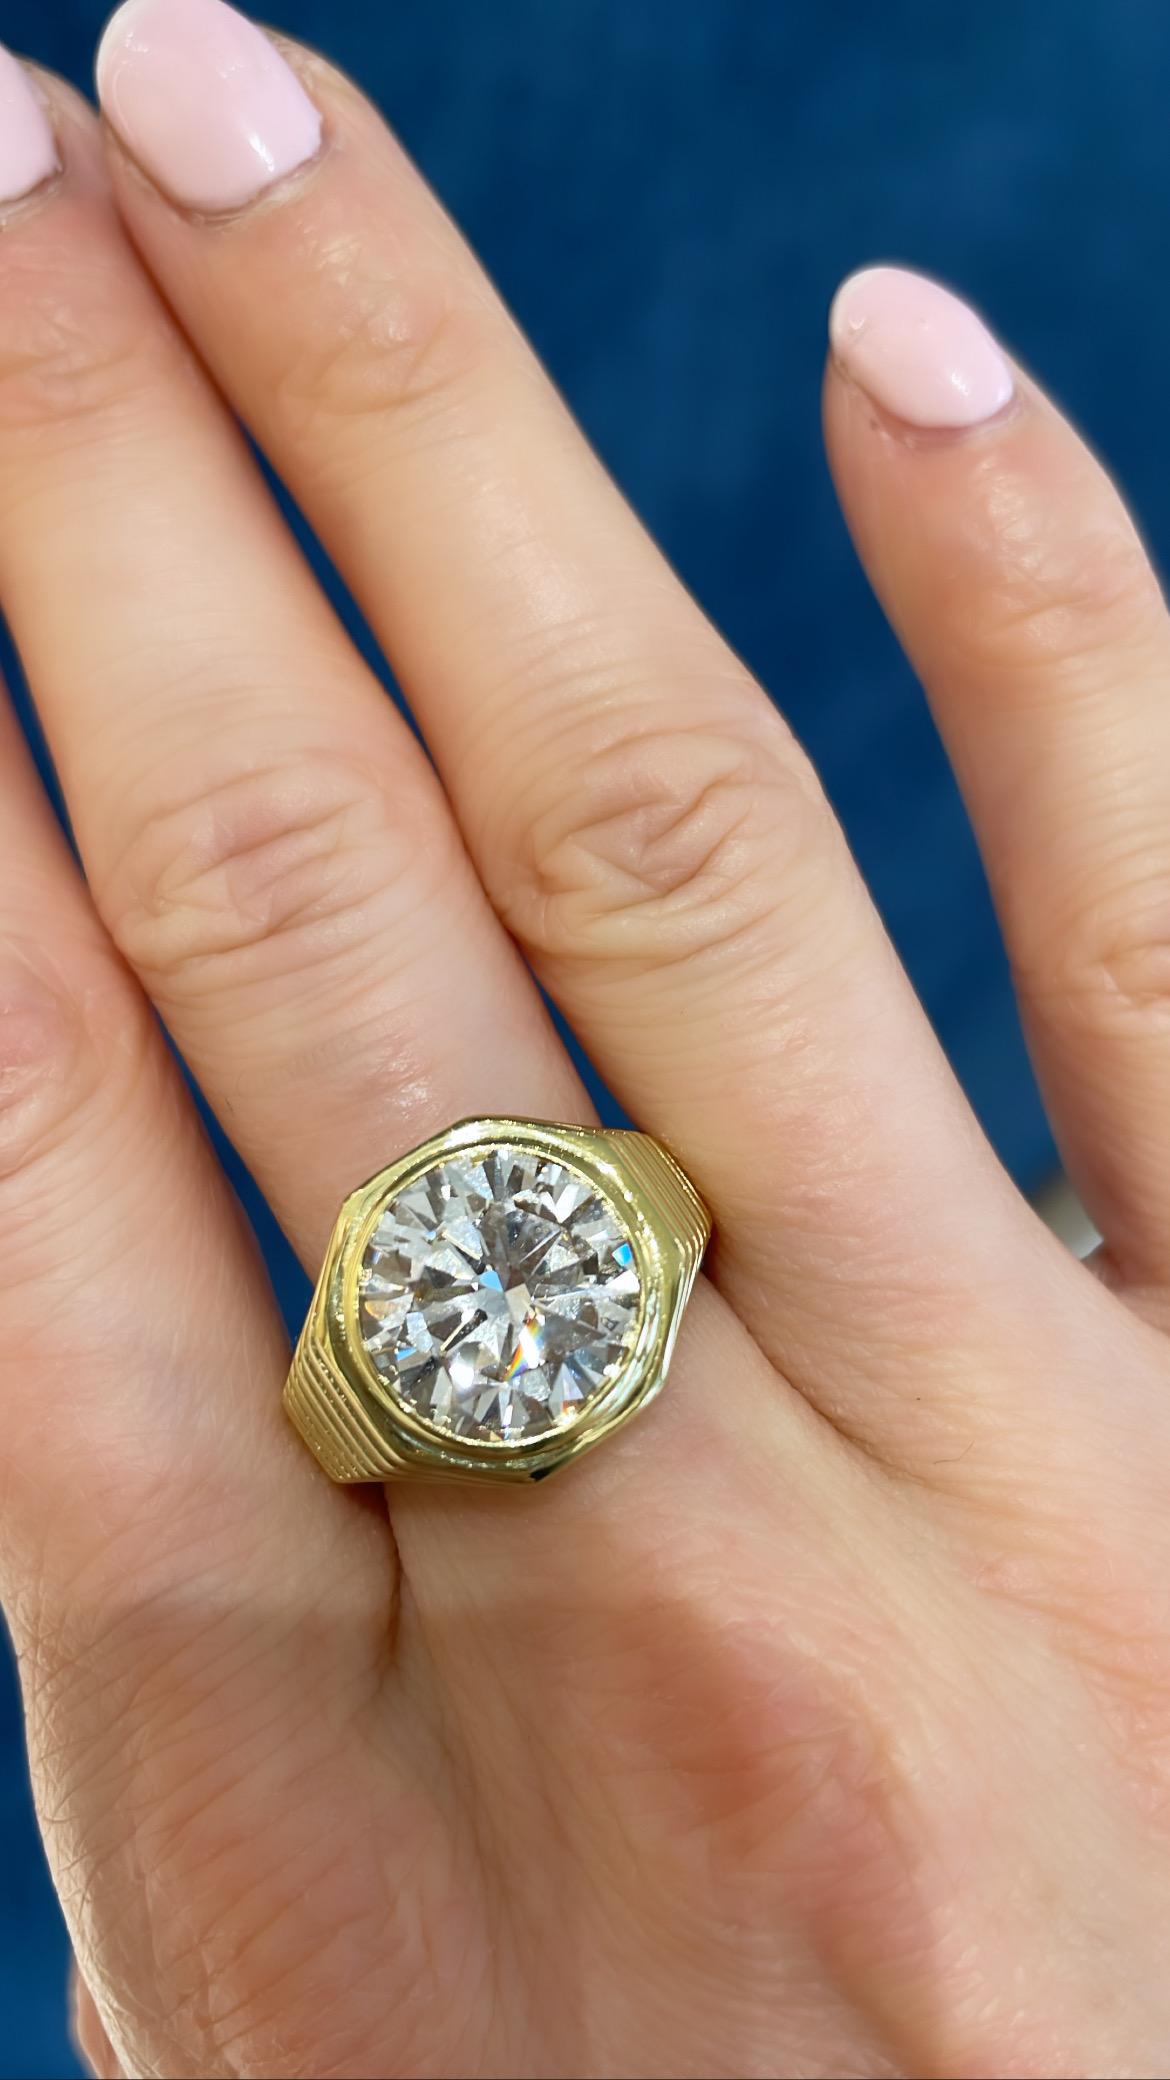 Un magnifique diamant de forme ronde de 5,39 ct serti dans une bague de fiançailles de style signet en or jaune 18 carats. Serti d'un diamant de 5,39 carats, de couleur J, de pureté VVS2 et de forme ronde, certifié par le GIA. 
Cette bague de style